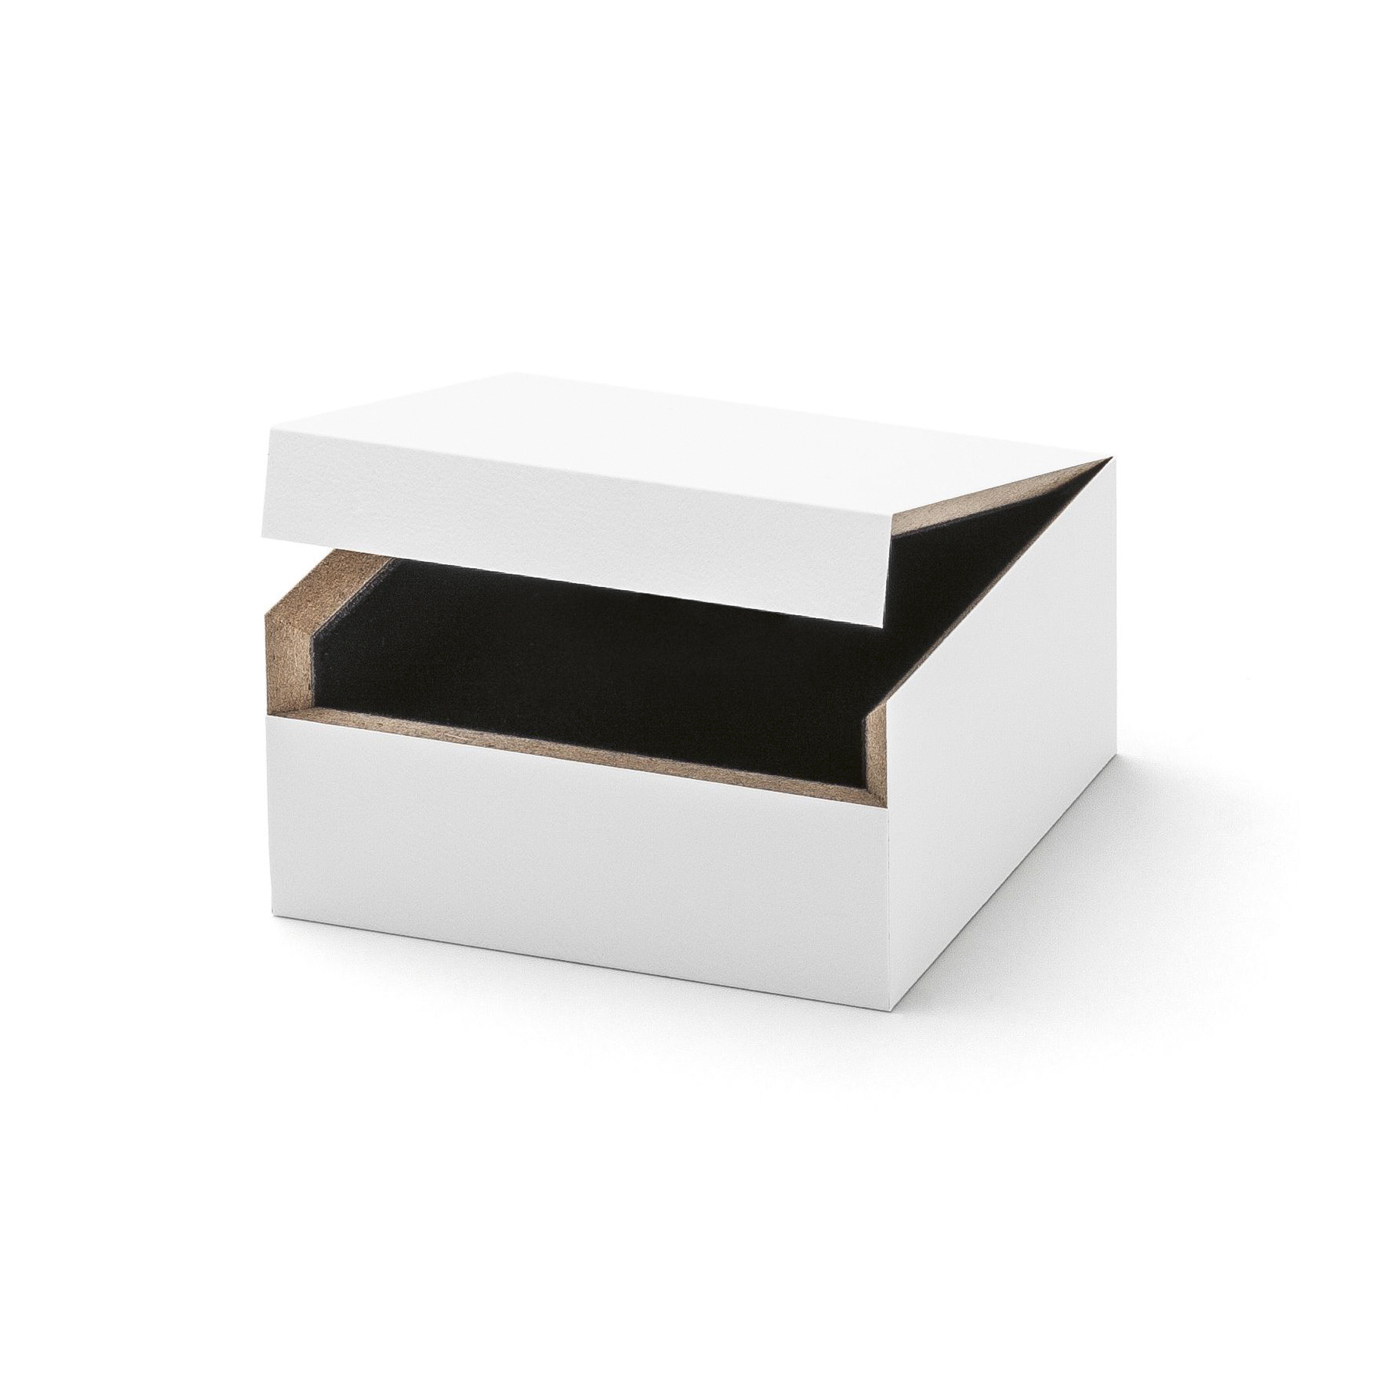 PICA-Design Schmucketui "Whitebox", 60 x 60 x 30 mm - 1 Stück